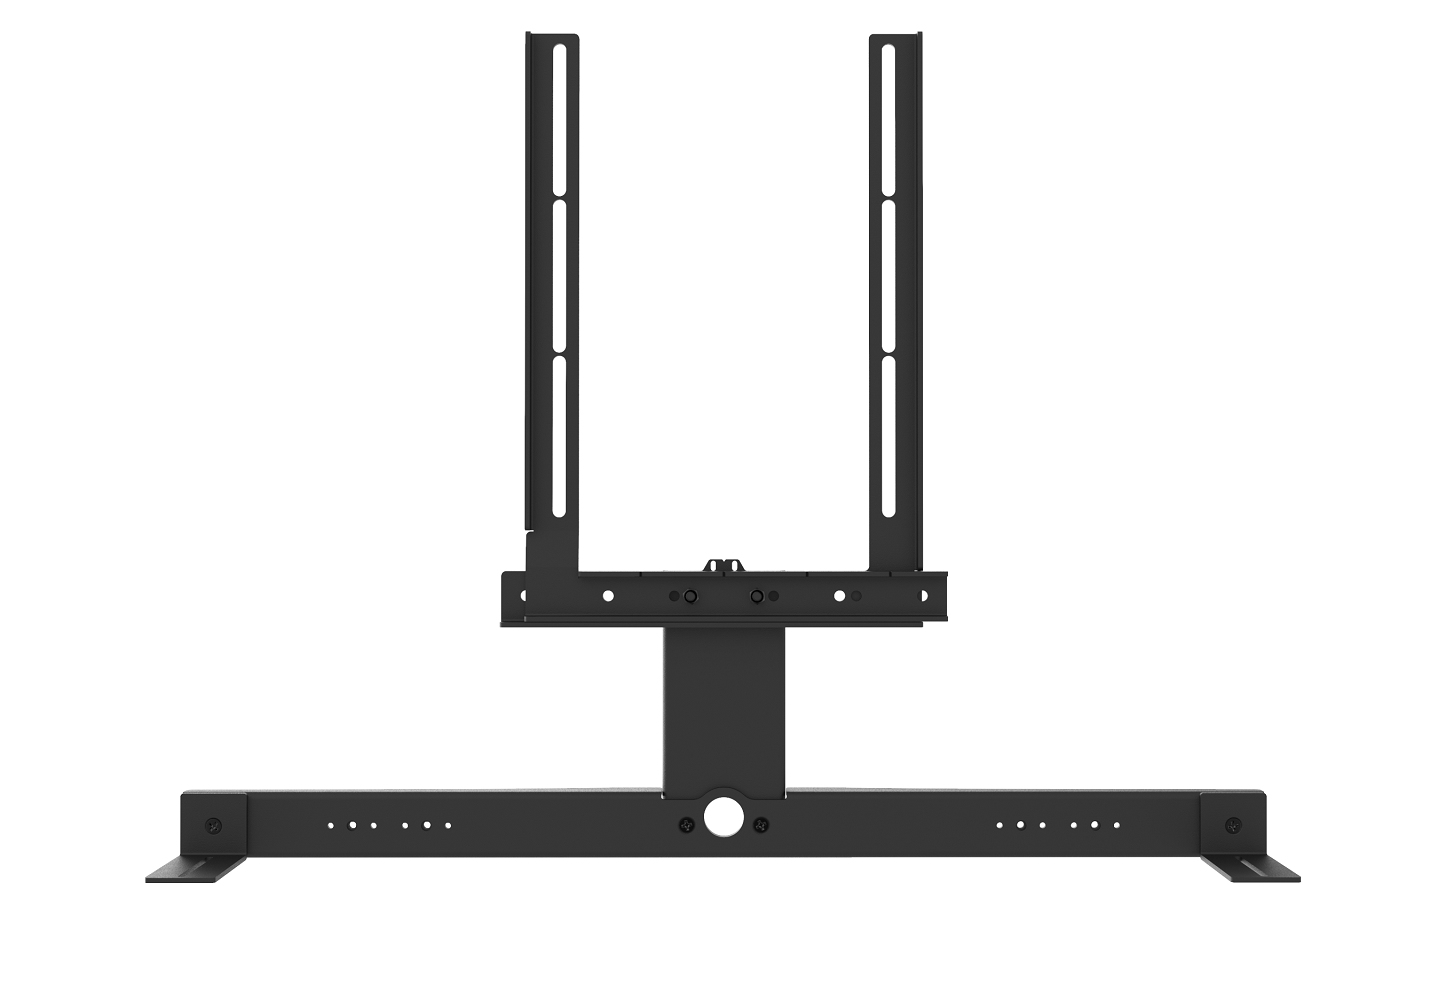 Frame CAVUS voor Samsung soundbars 01 zwart (muurbeugel)